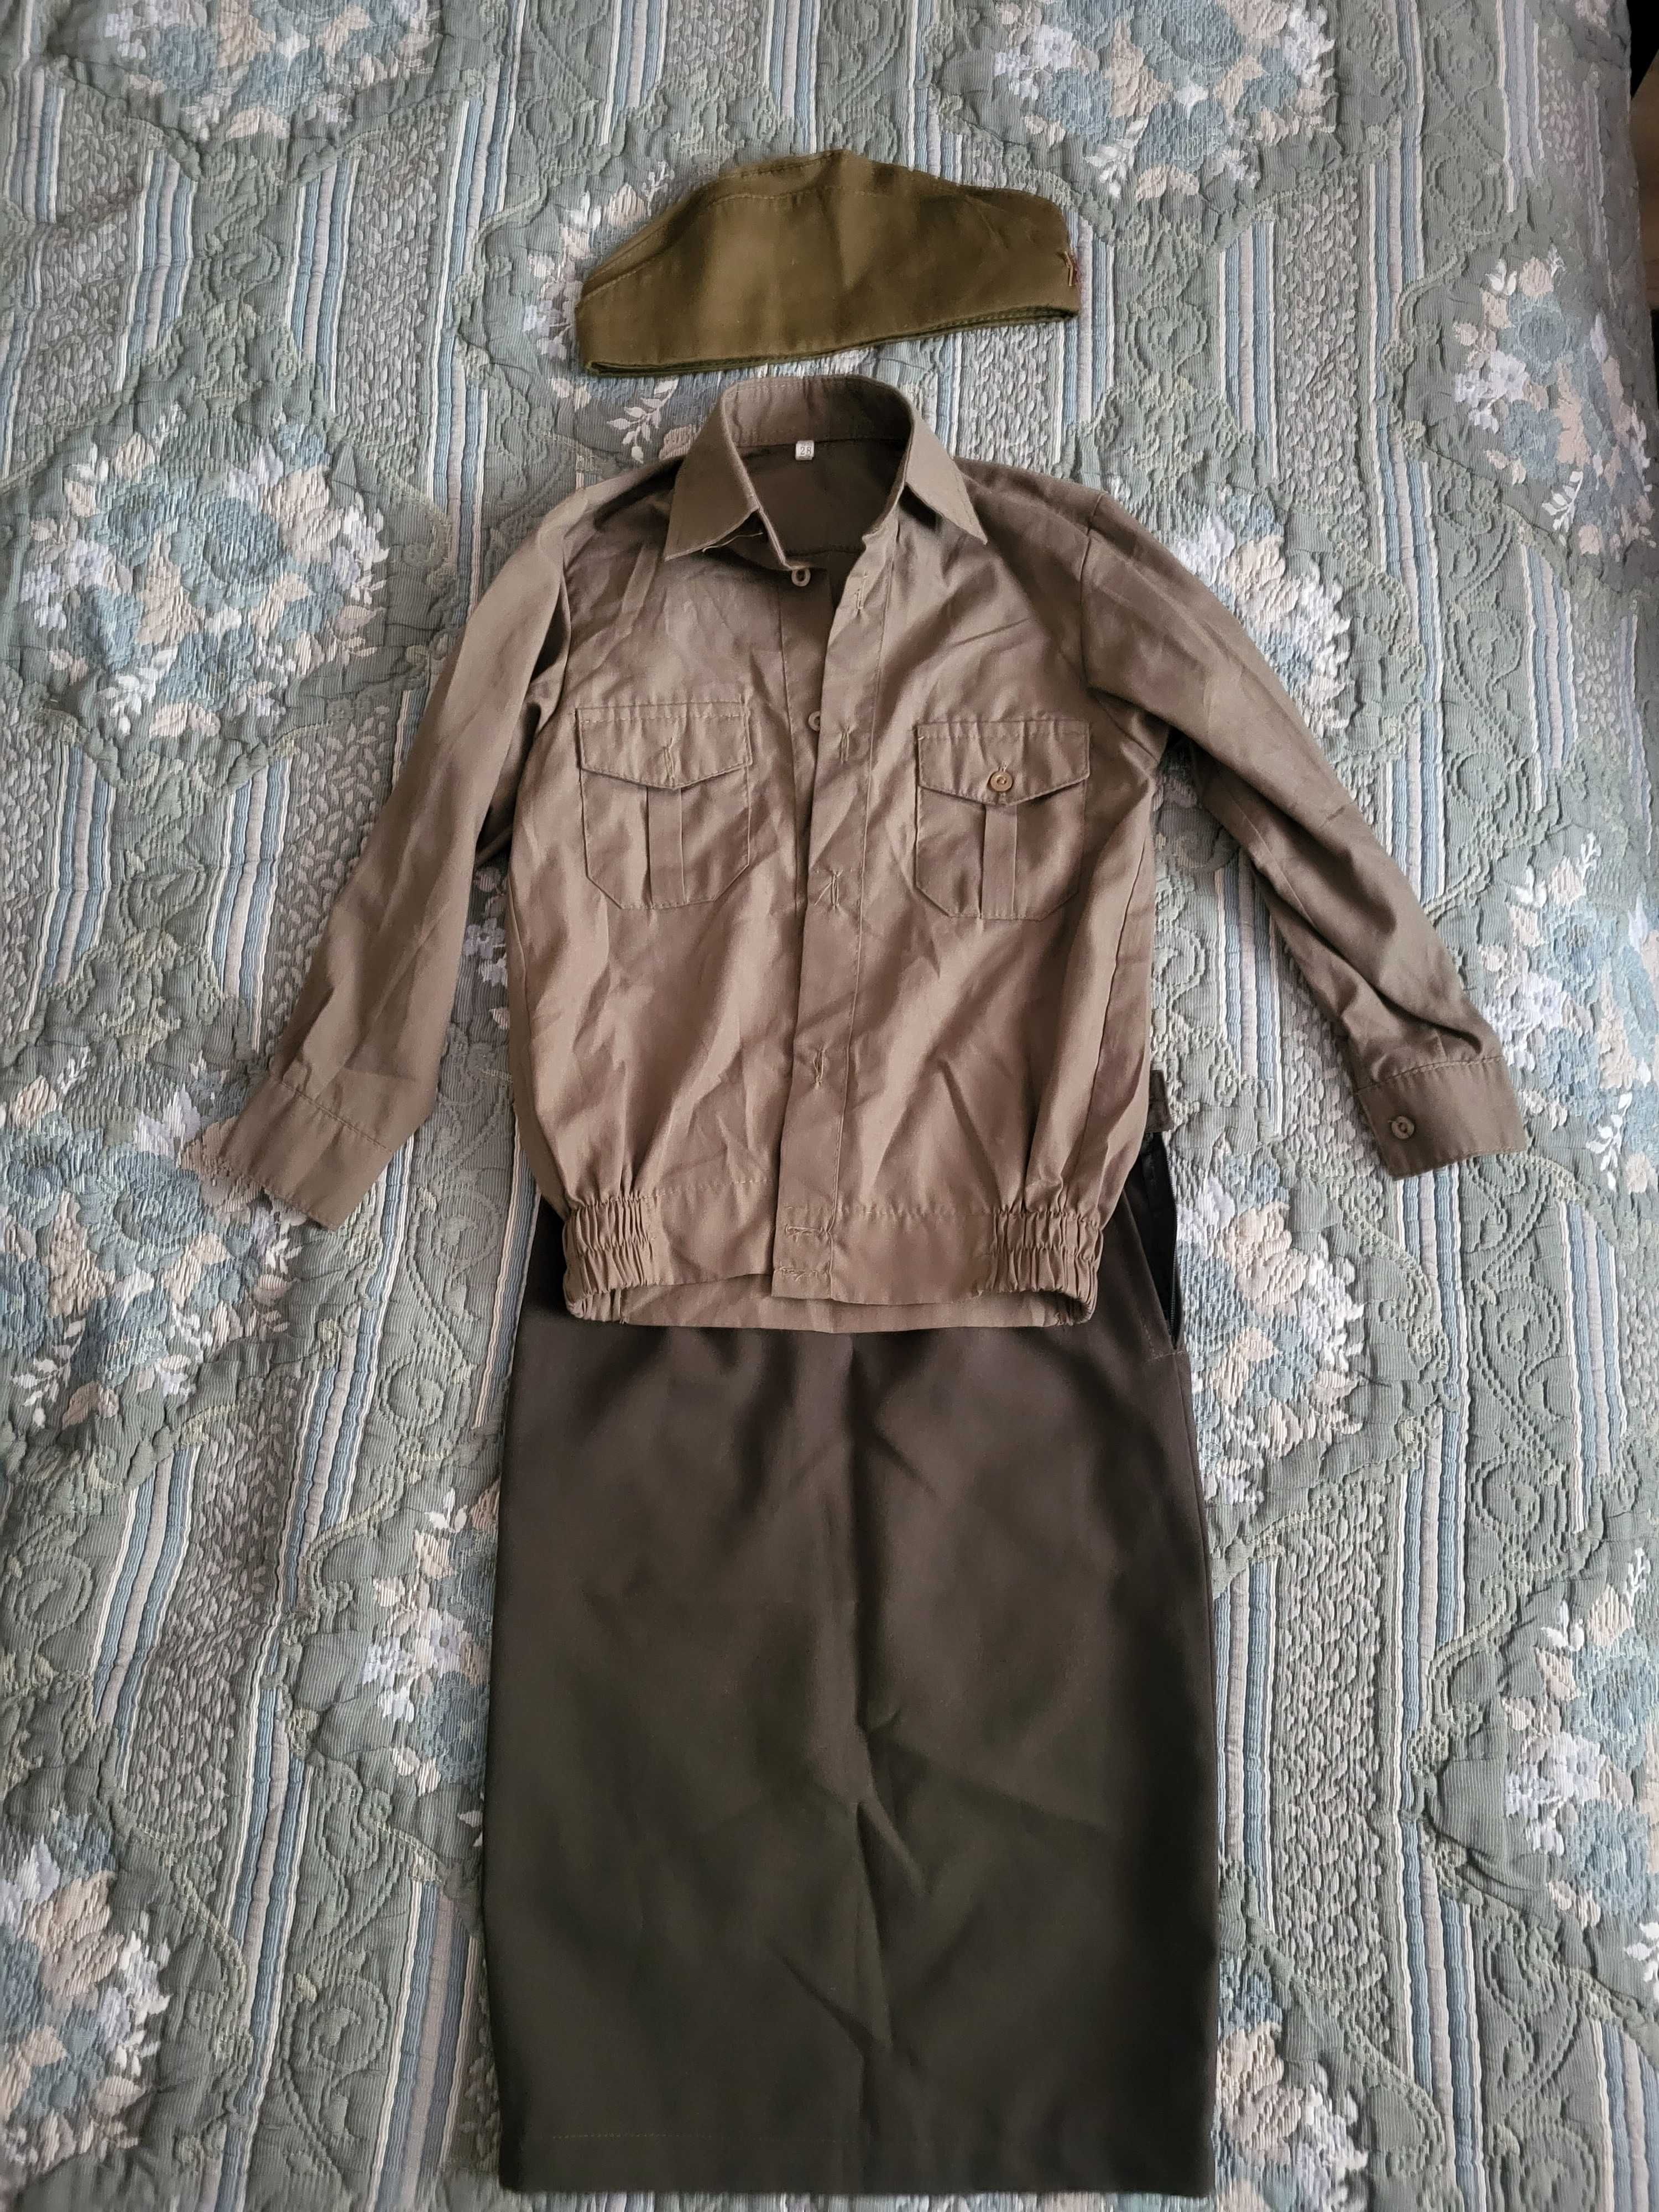 военная форма юбка+блузка+пилотка на рост 128